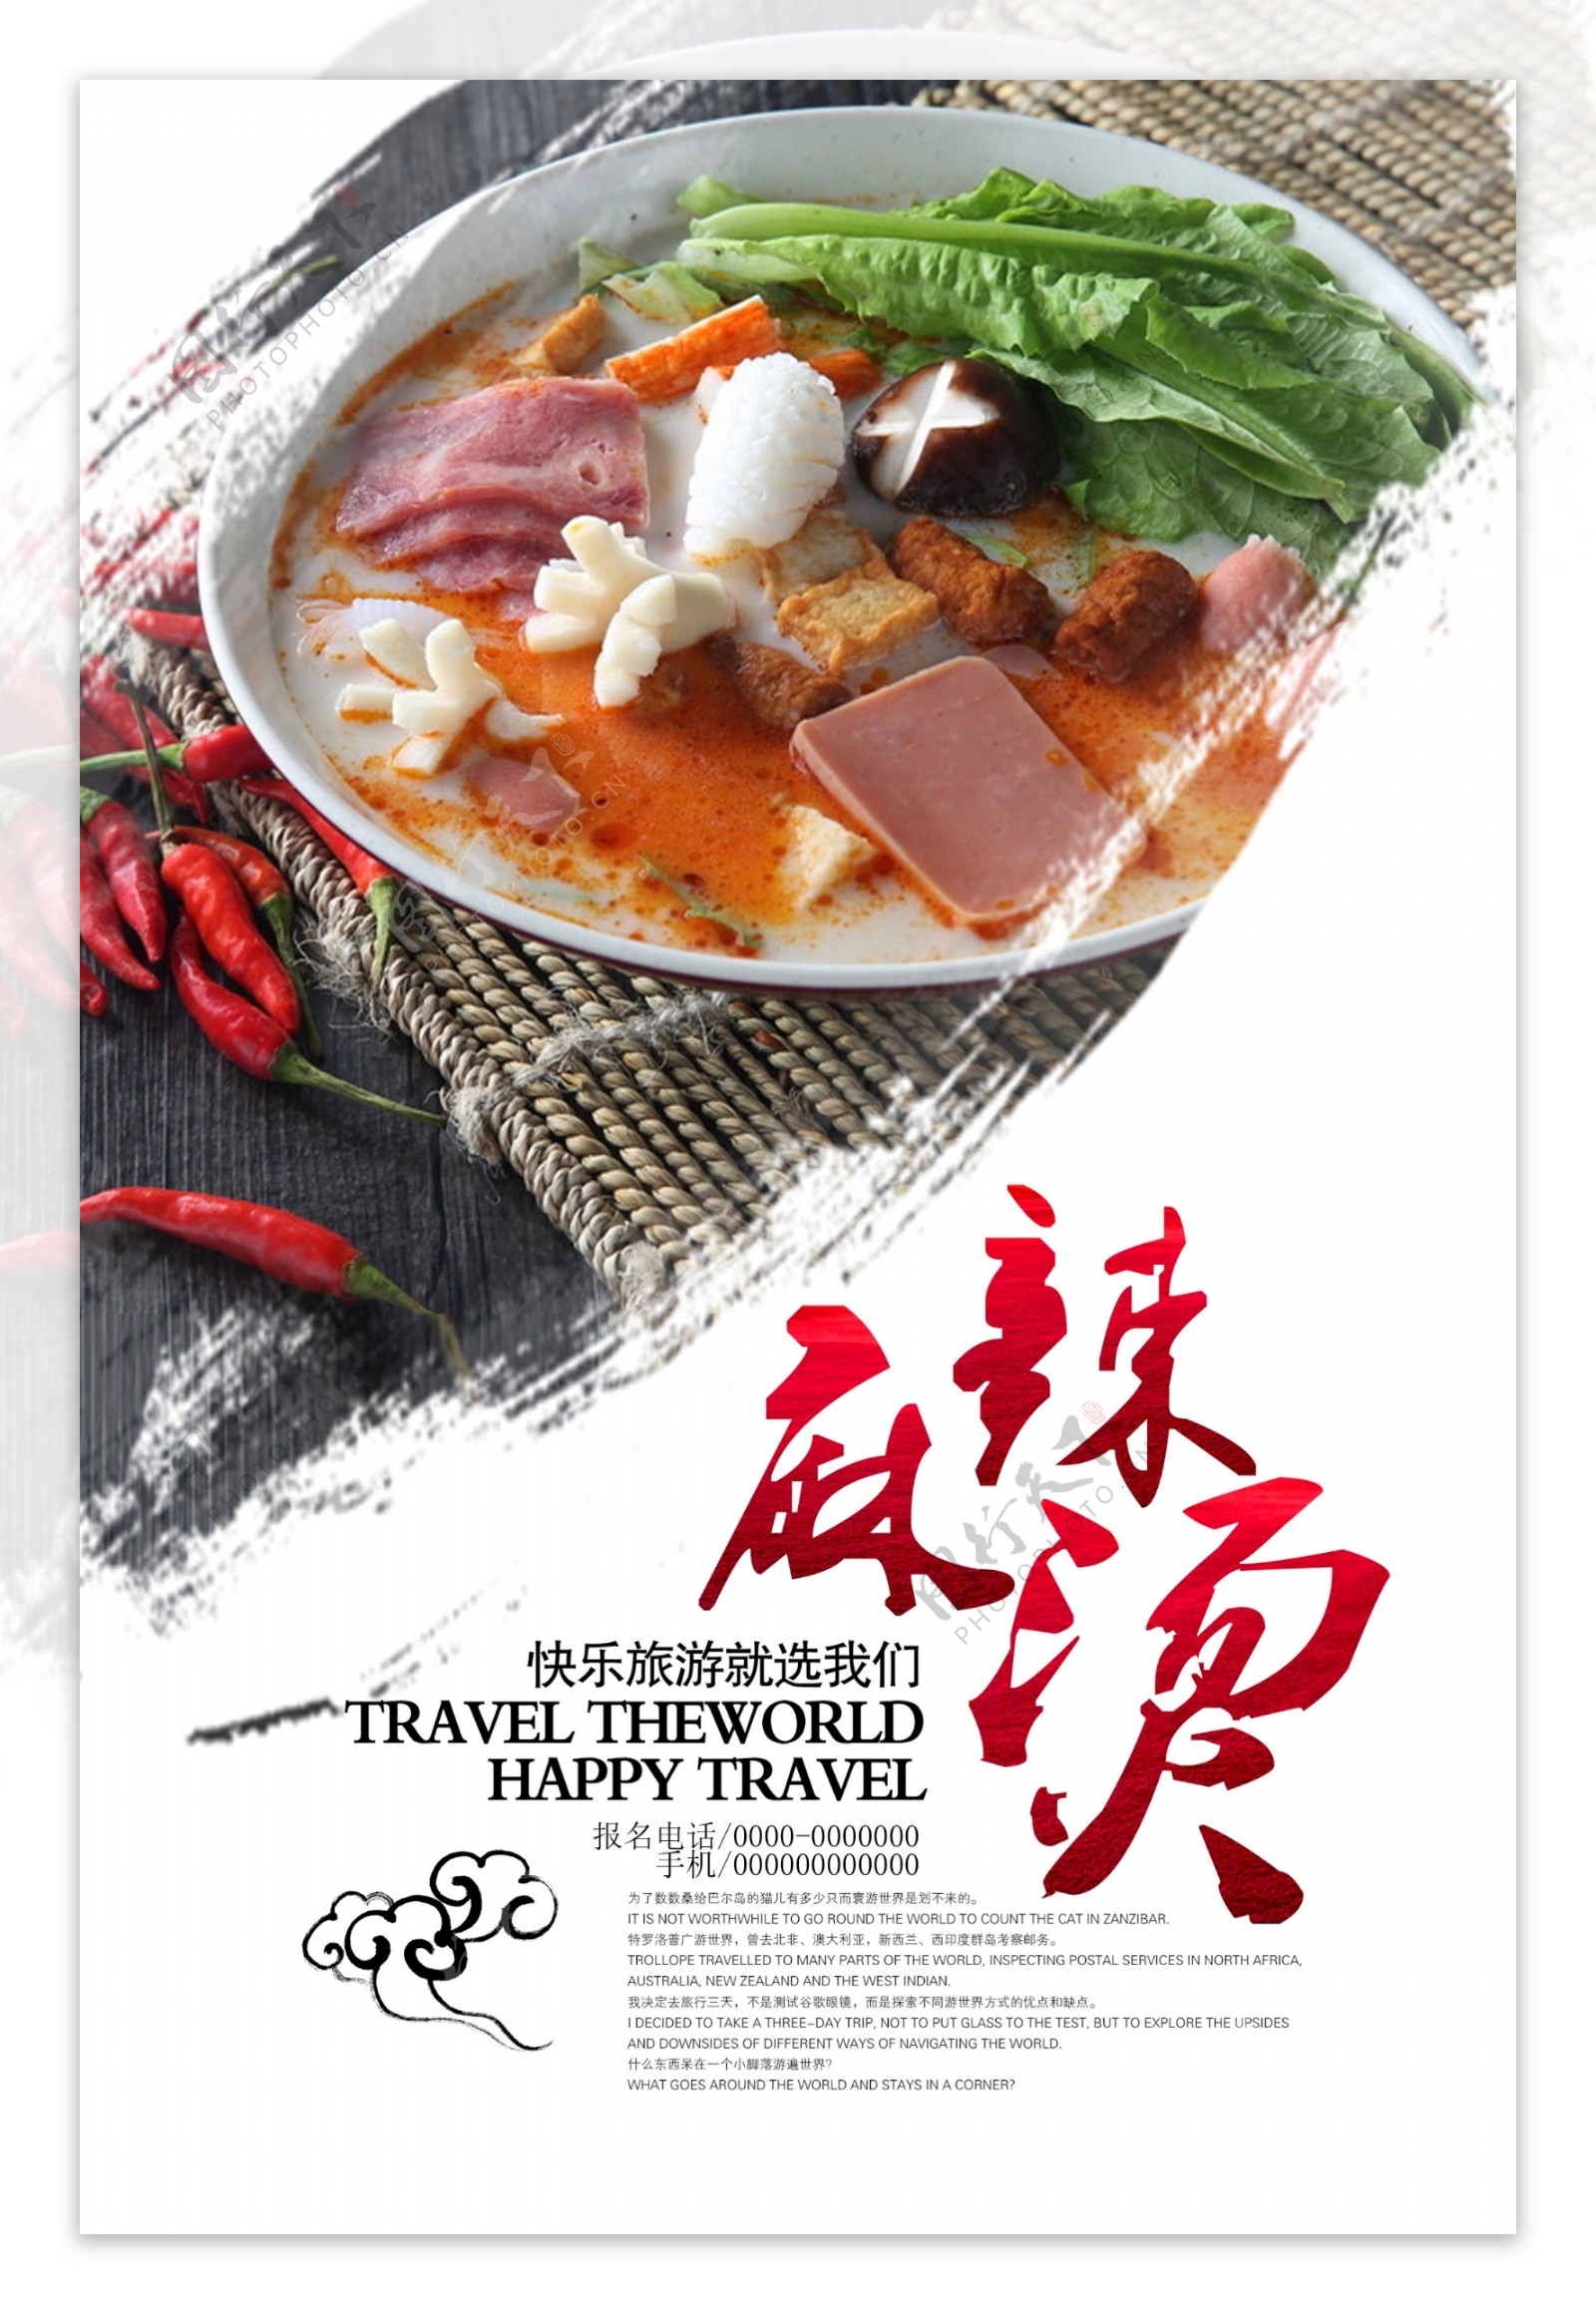 中国风麻辣烫餐饮海报